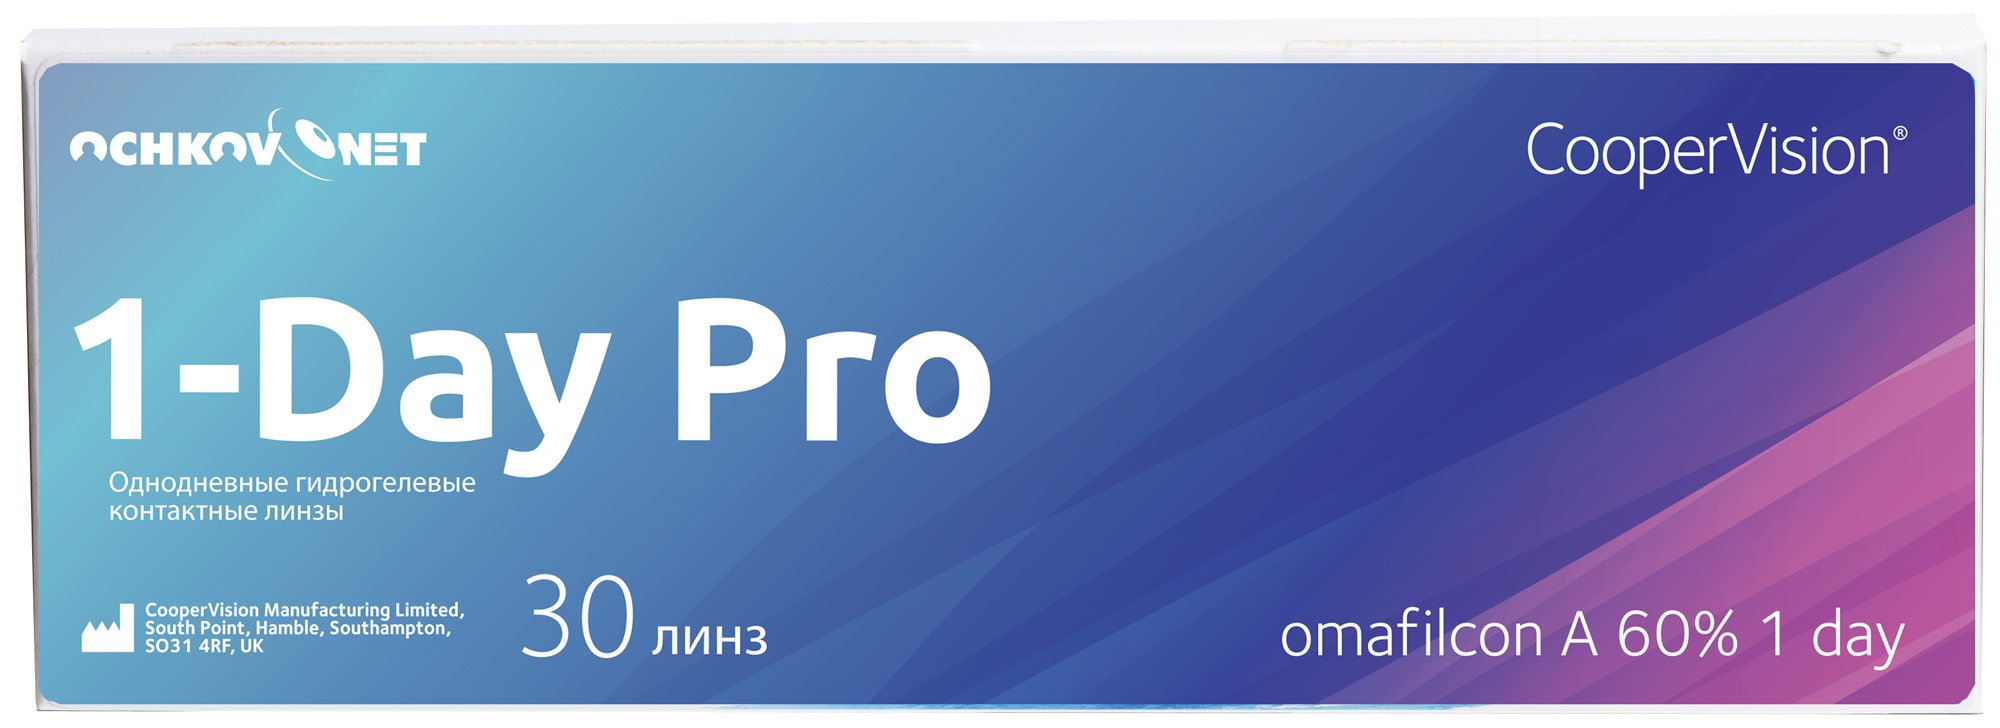 Купить Контактные линзы Ochkov.Net 1-Day Pro 30 линз 8.7, +4.75